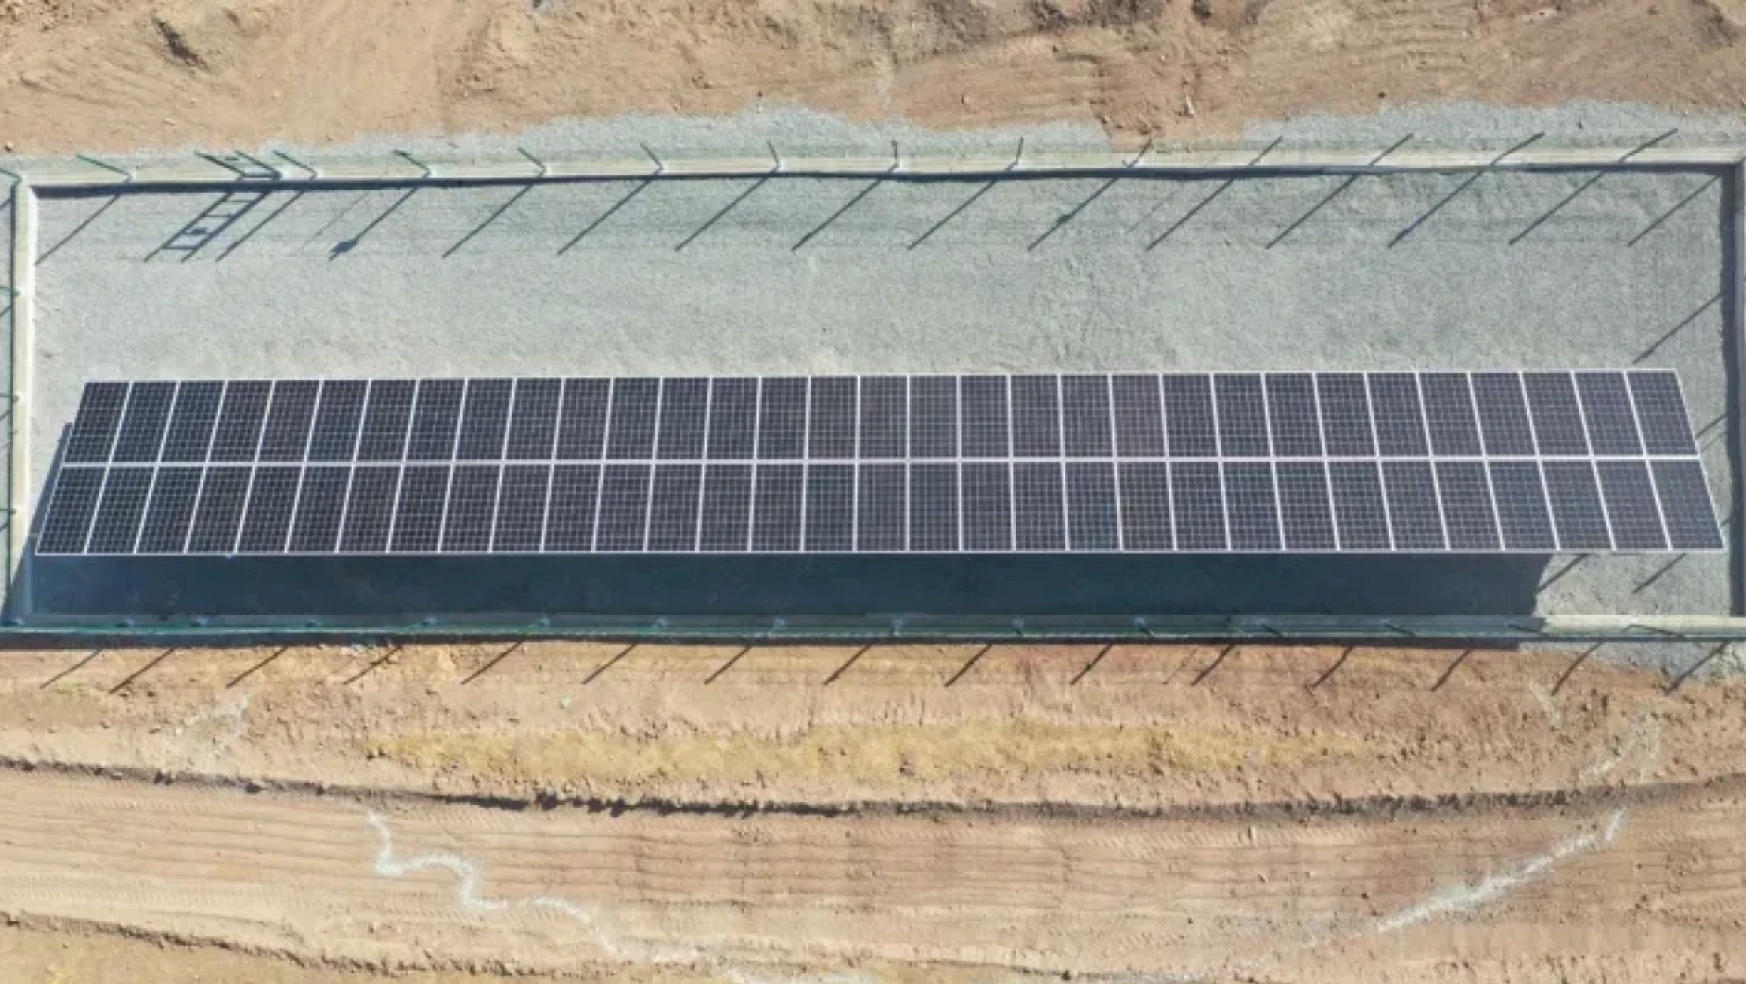 İl Özel İdare'den Sarıkamış köyü'ne güneş enerjisi sistemli içme suyu tesisi